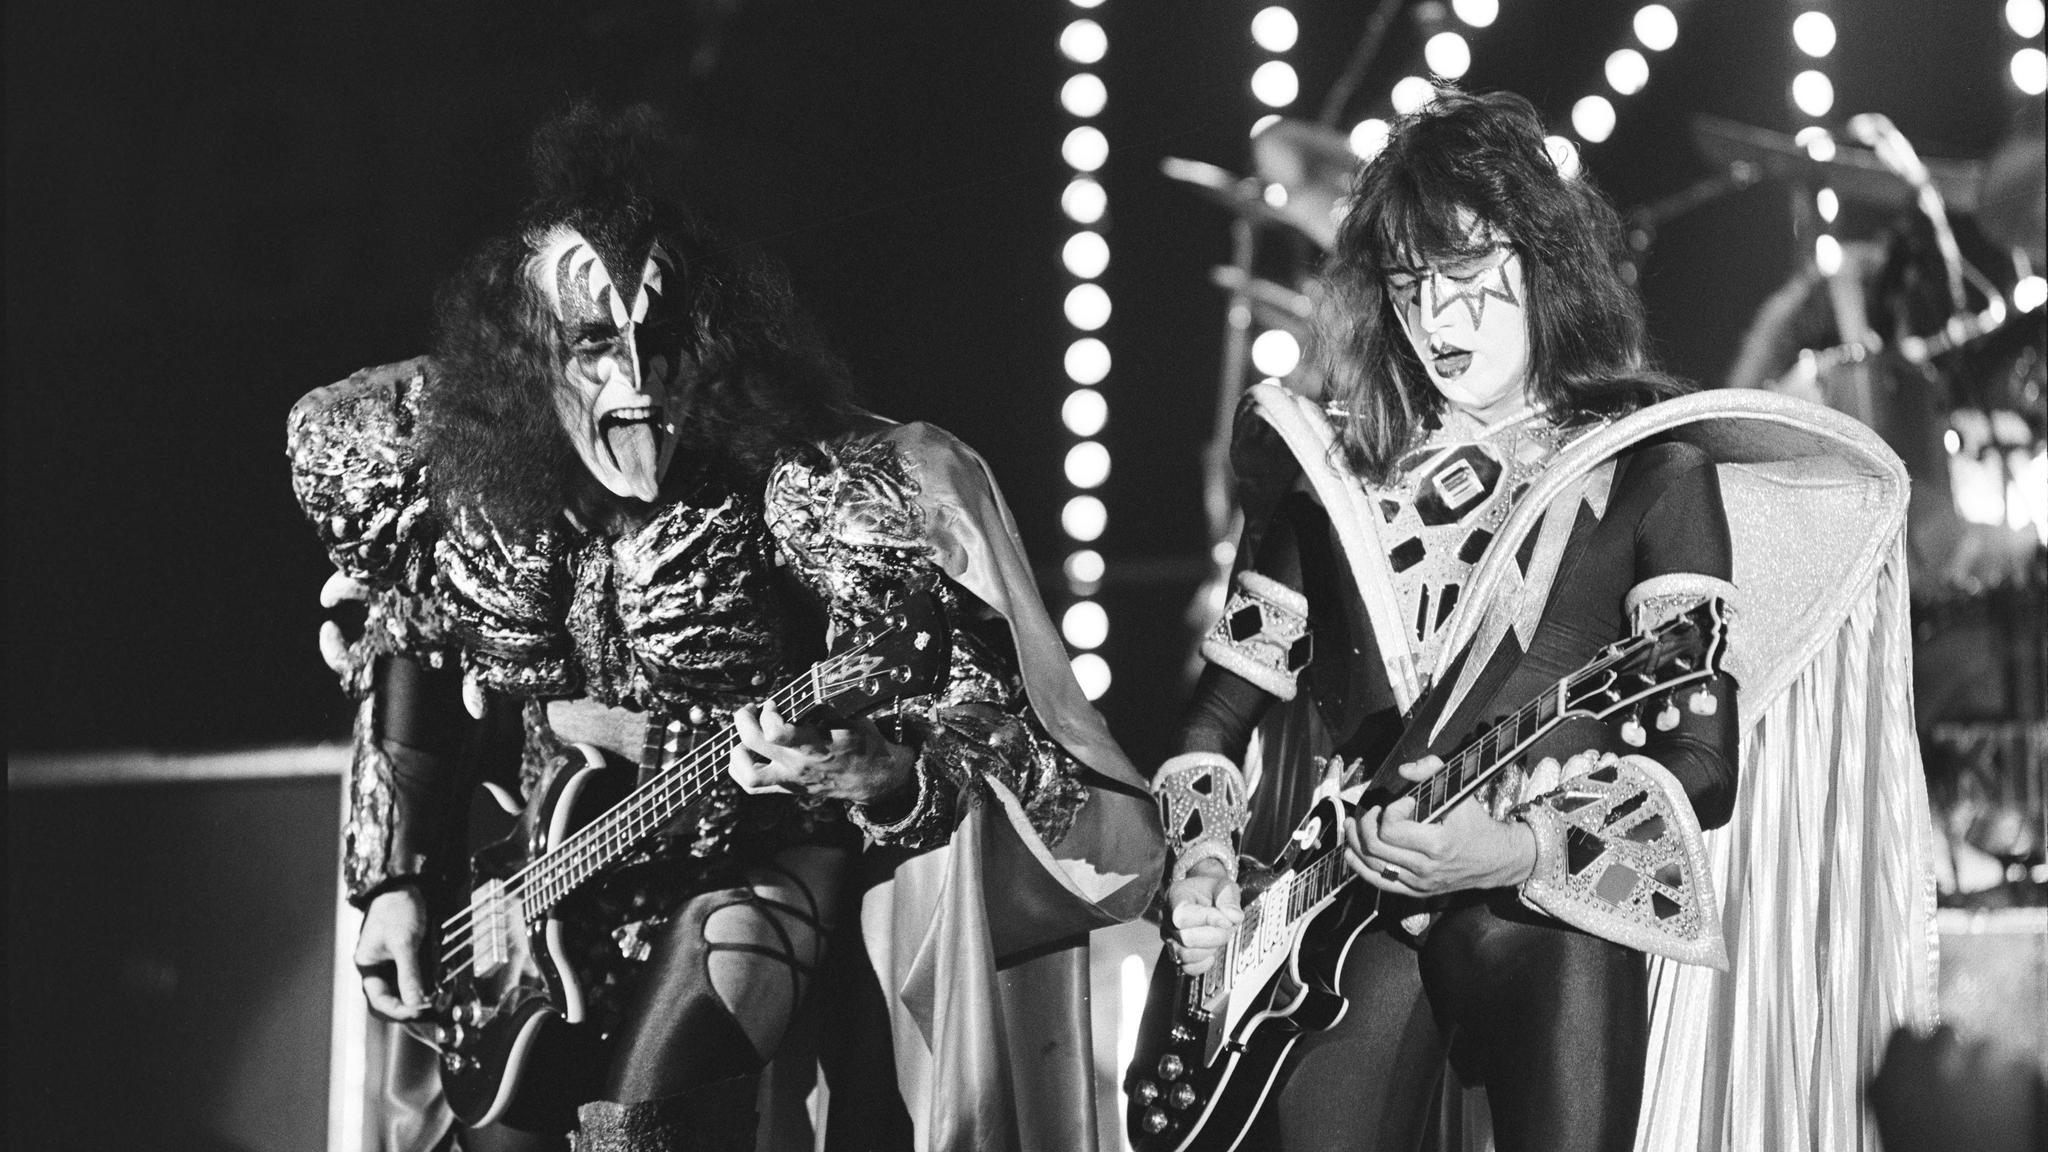 Da Kiss kom til Drammen: – Groupies fikk kjørt seg den kvelden, for å si det sånn.